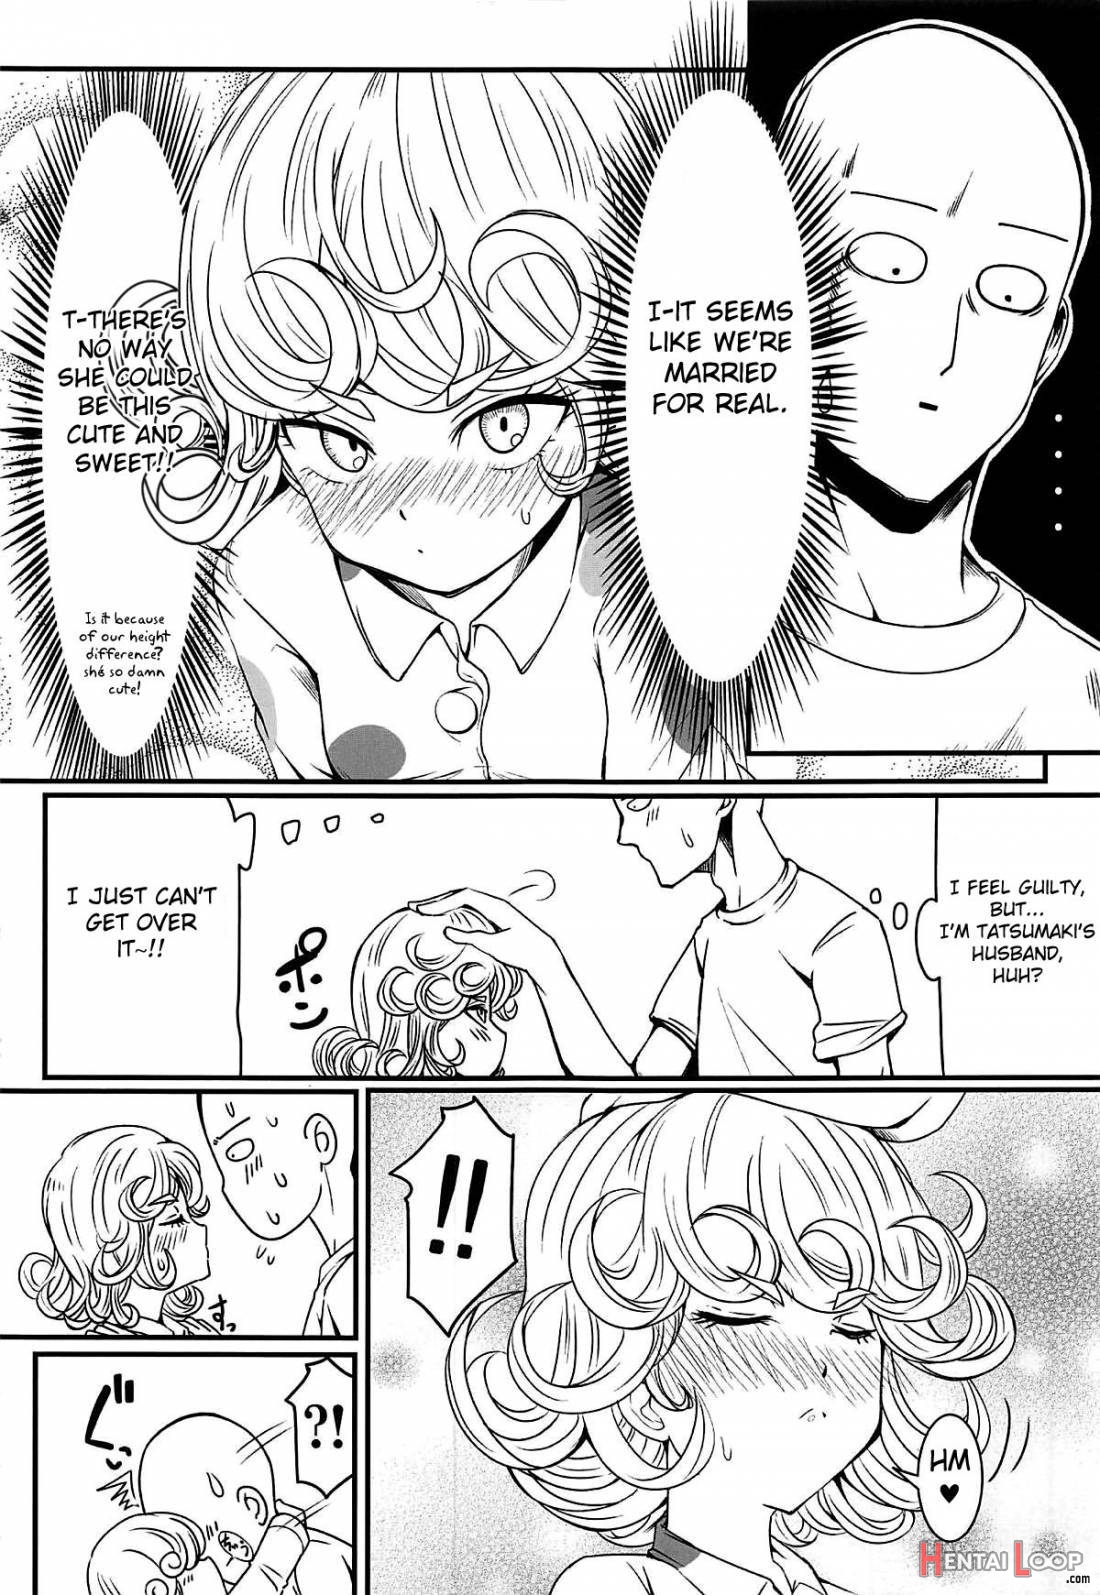 Dekoboko Love sister 3-gekime page 23